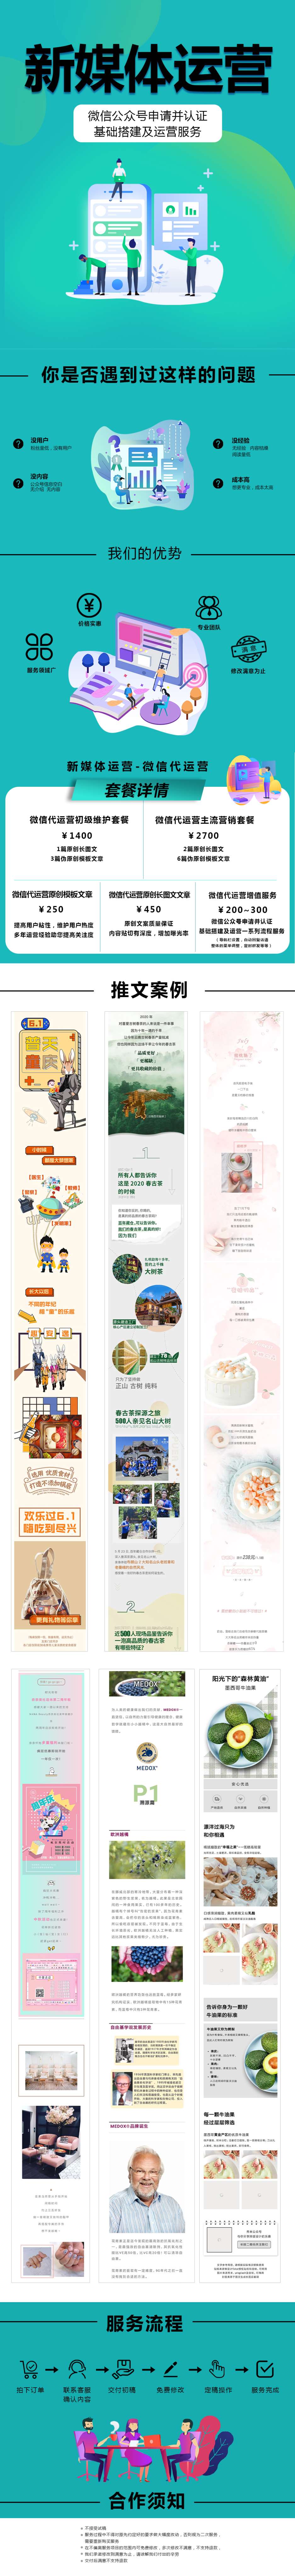 2020-12-8盈和动力&广州宝伦-新媒体运营服务.jpg